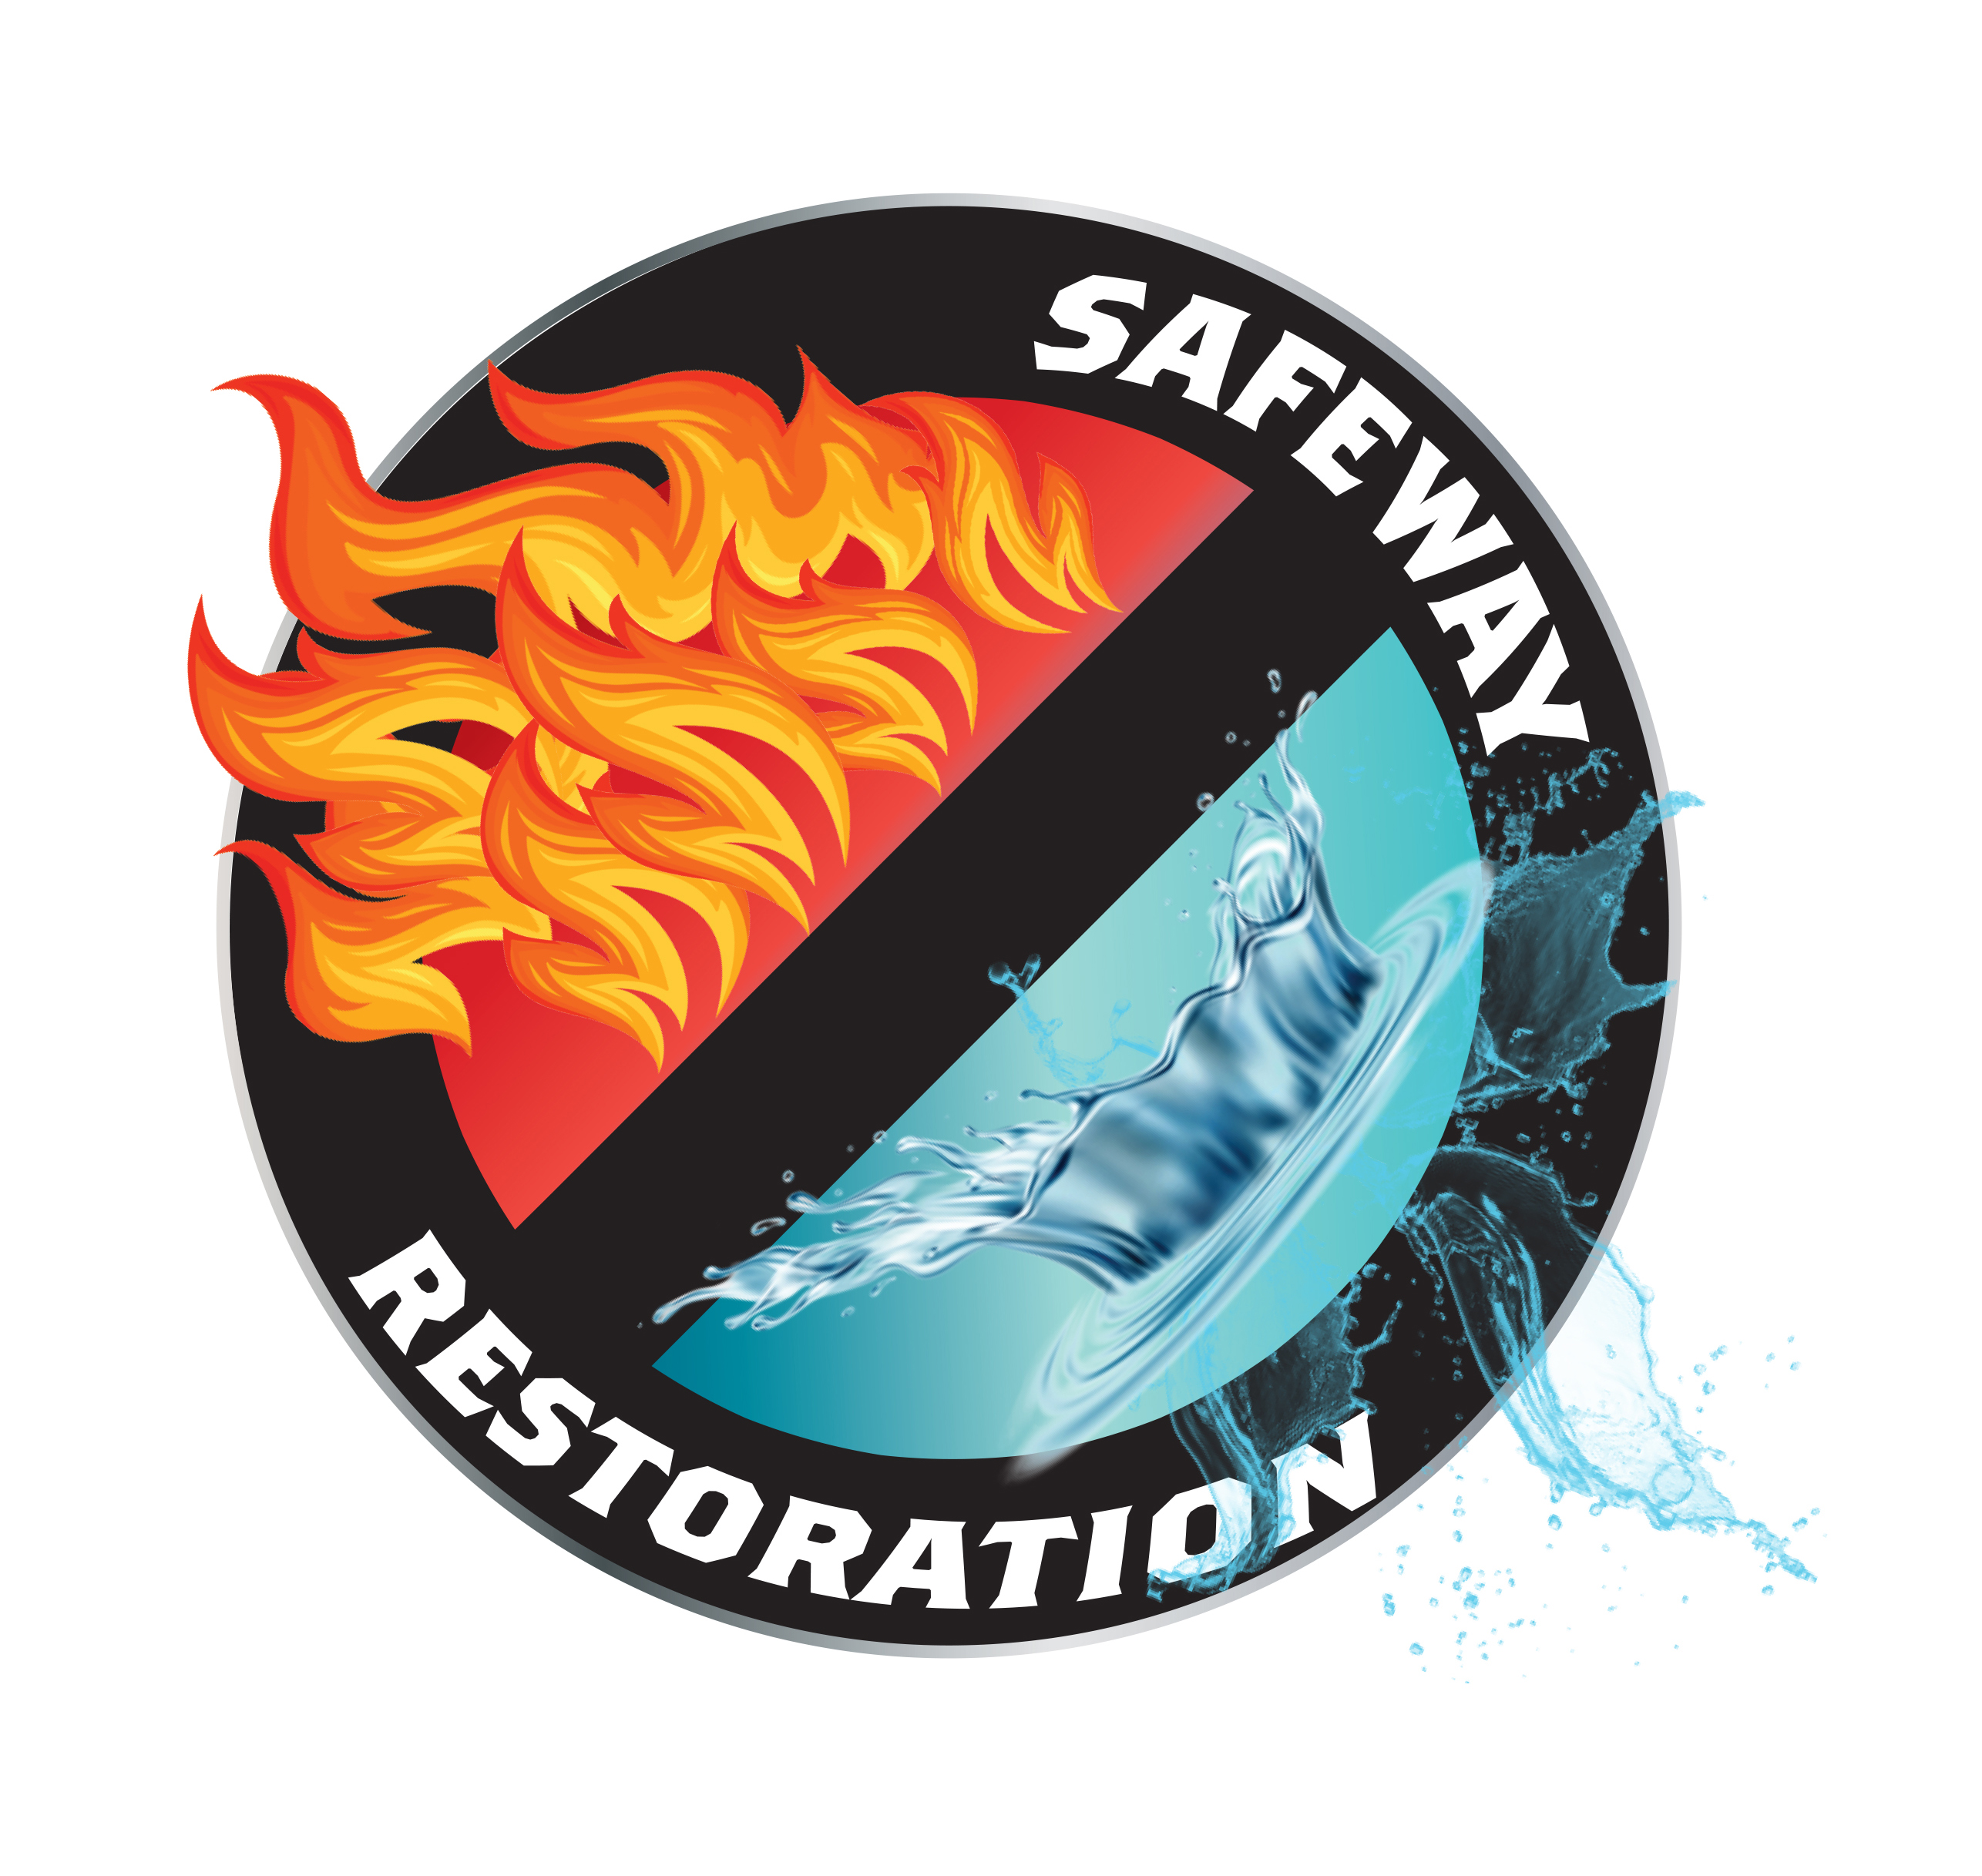 Safeway Restoration